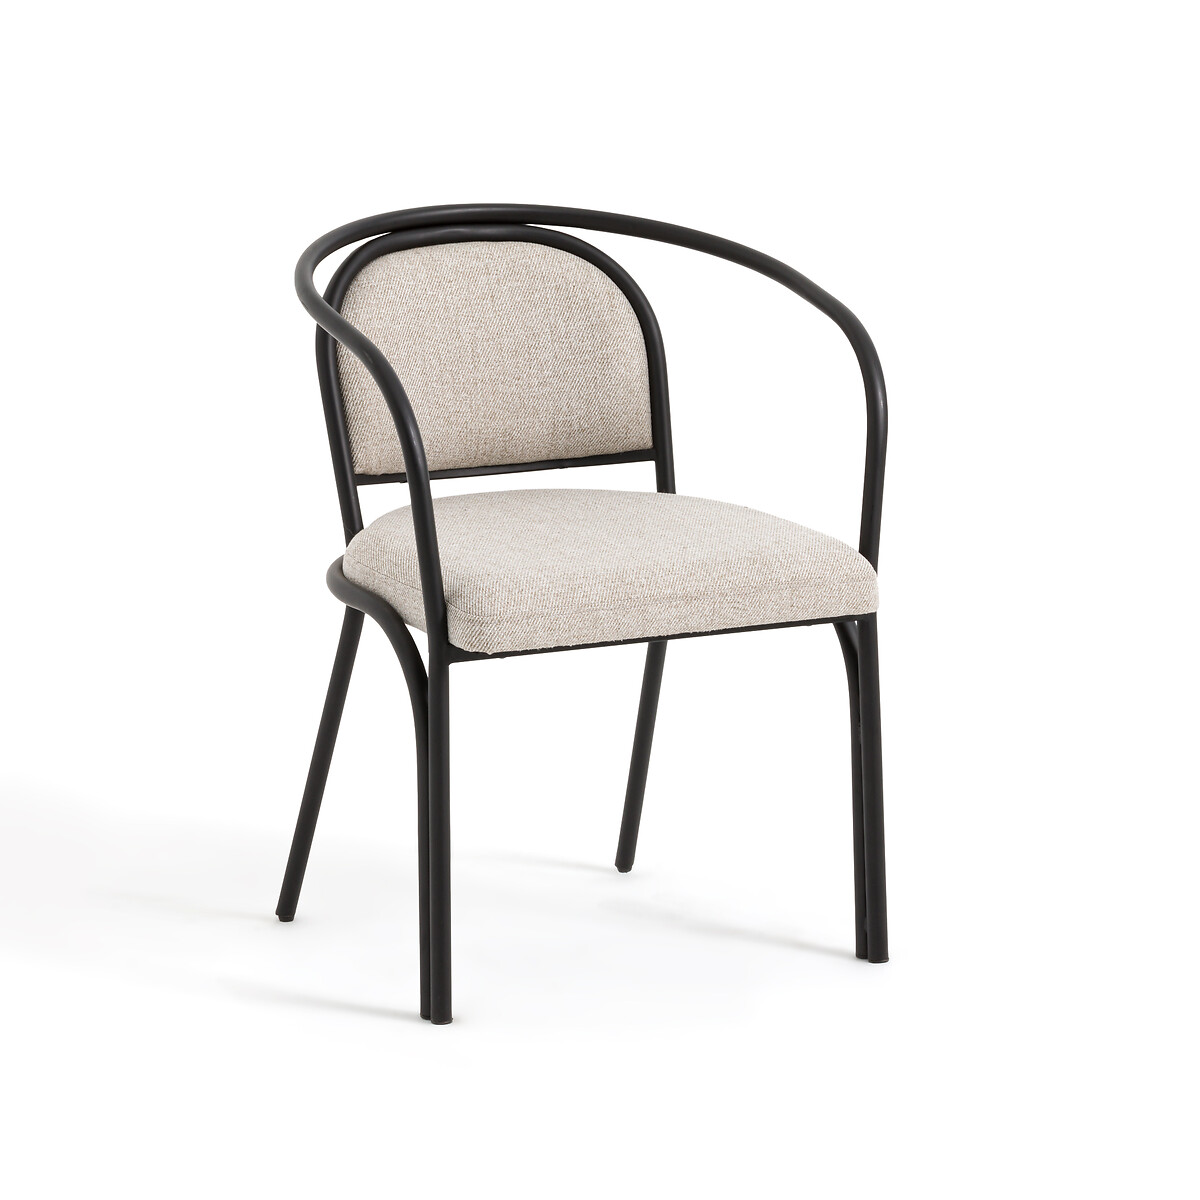 Кресло Для столовой из стали и ткани меланж Lindsay единый размер бежевый